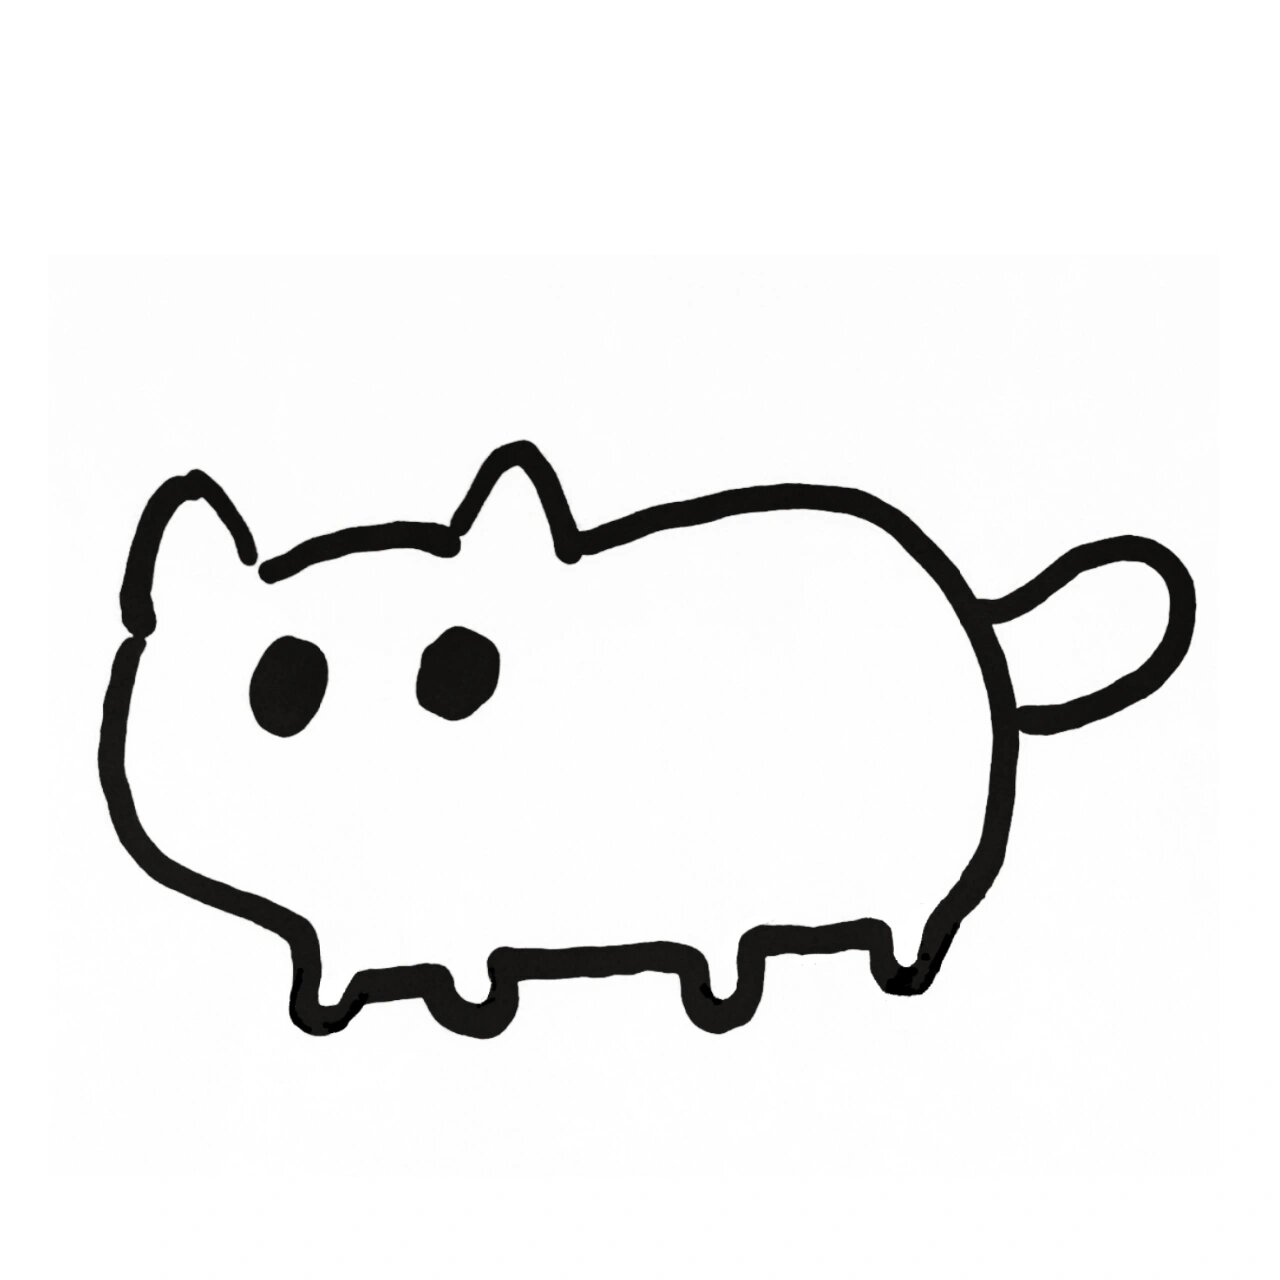 极简手绘表情动物:可爱小猫咪